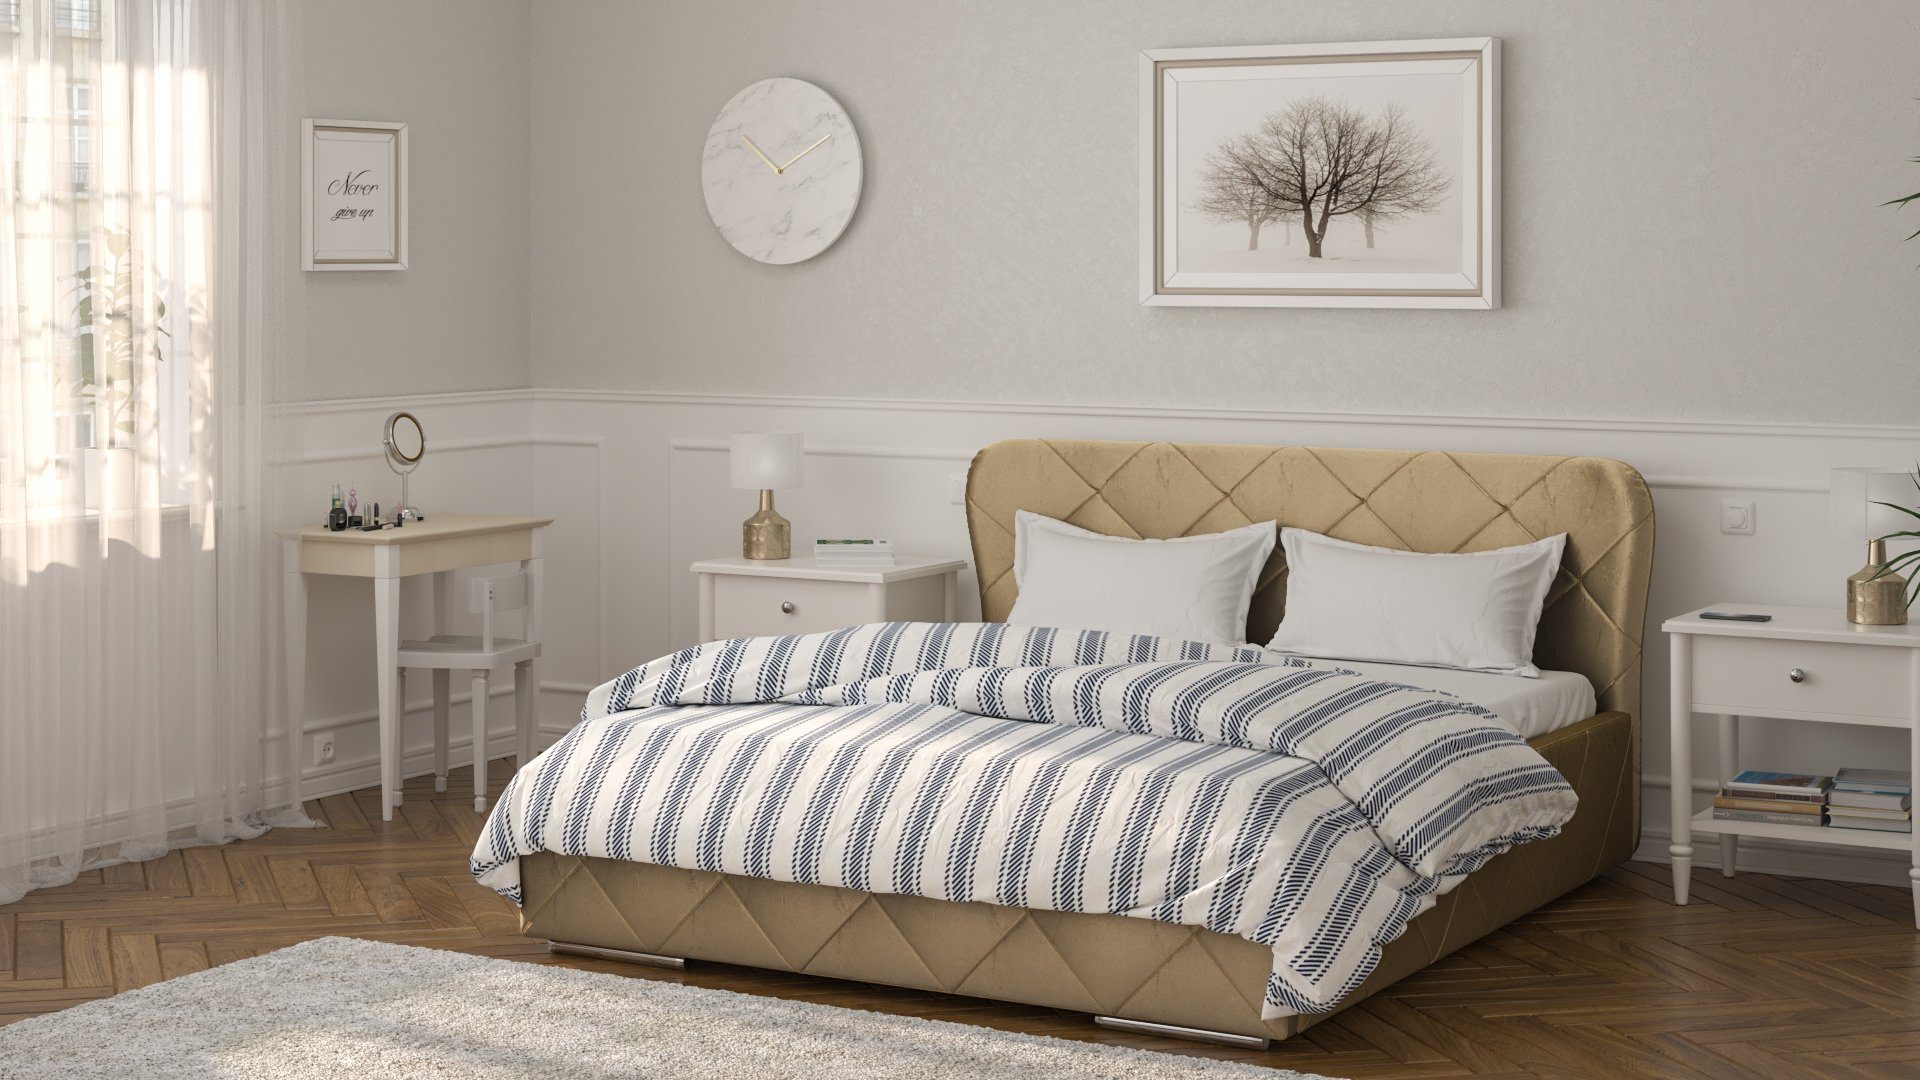 Creme Holzrahmen - mit Monako cm Doppelbett 200x160 Bett Siblo Bettzeugbehälter - - Doppelbetten hoher - Polsterbett Schlafkomfort